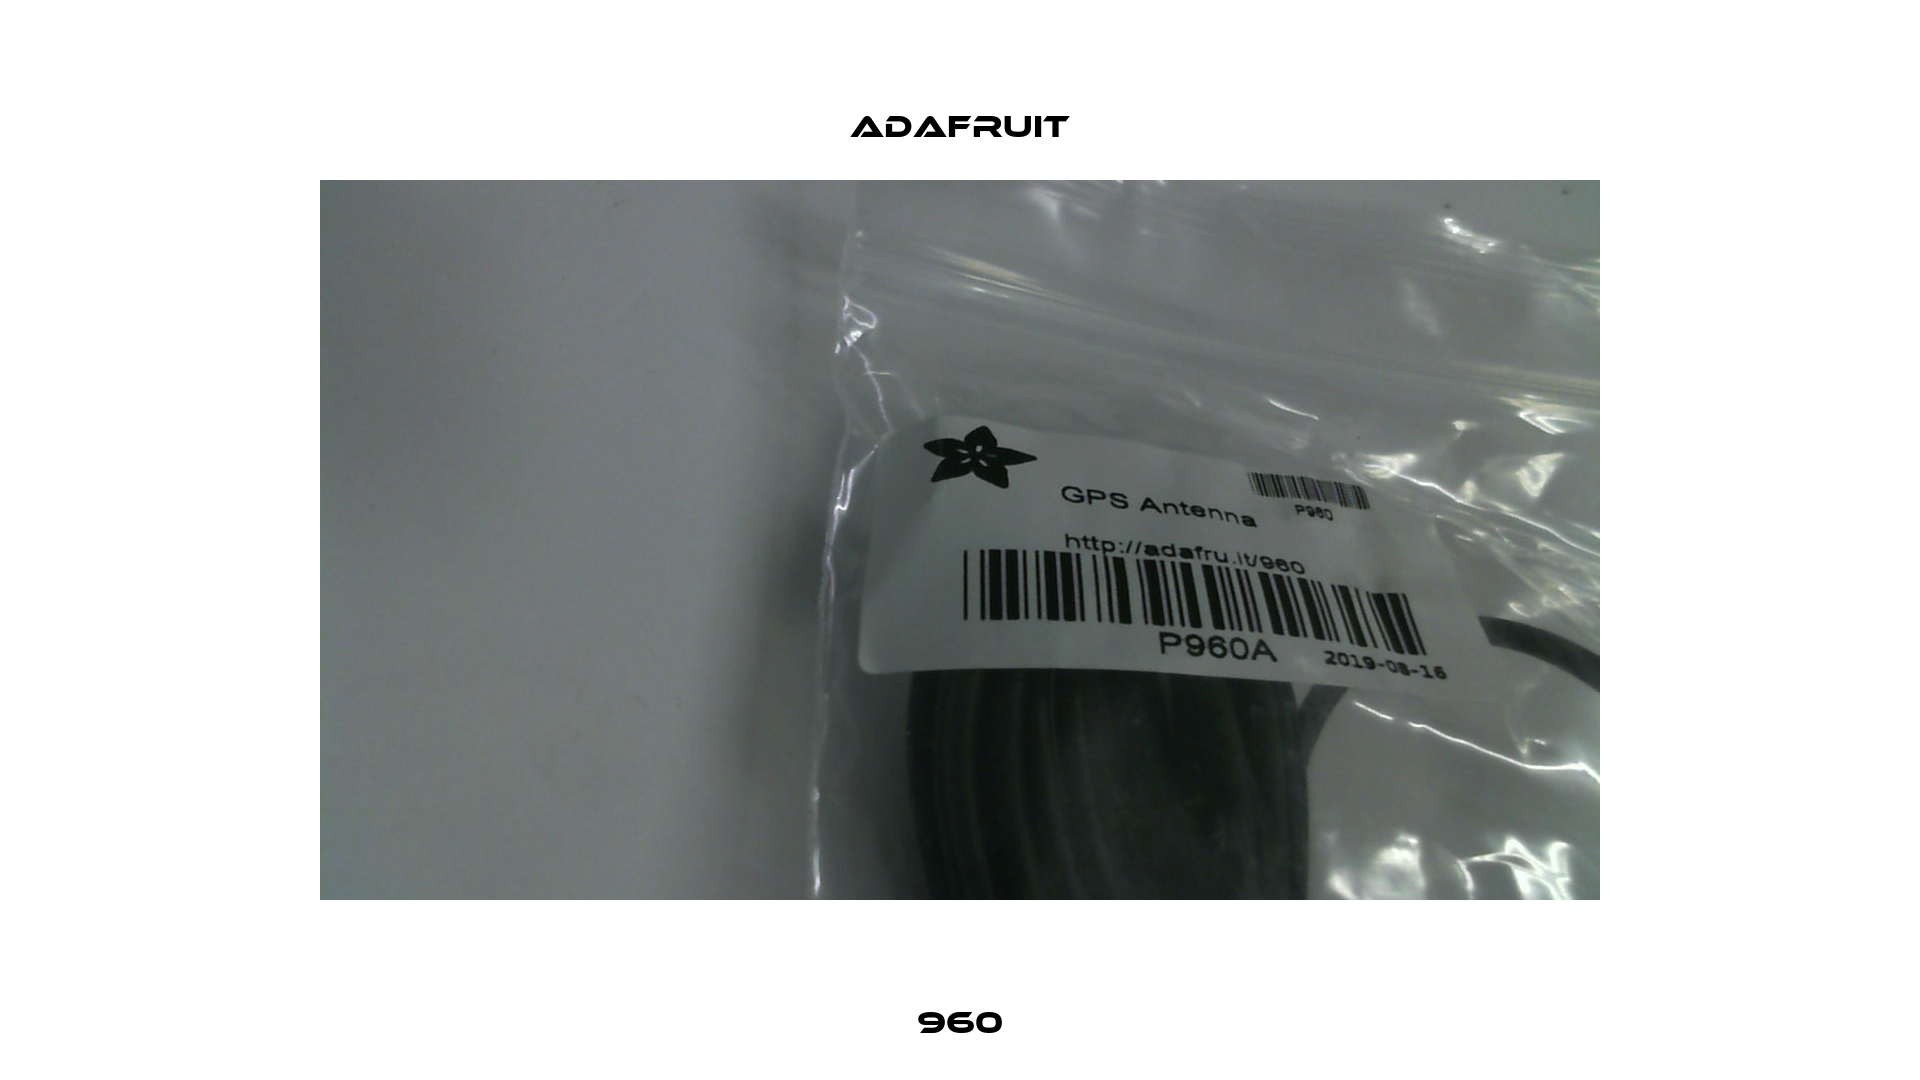 960 Adafruit